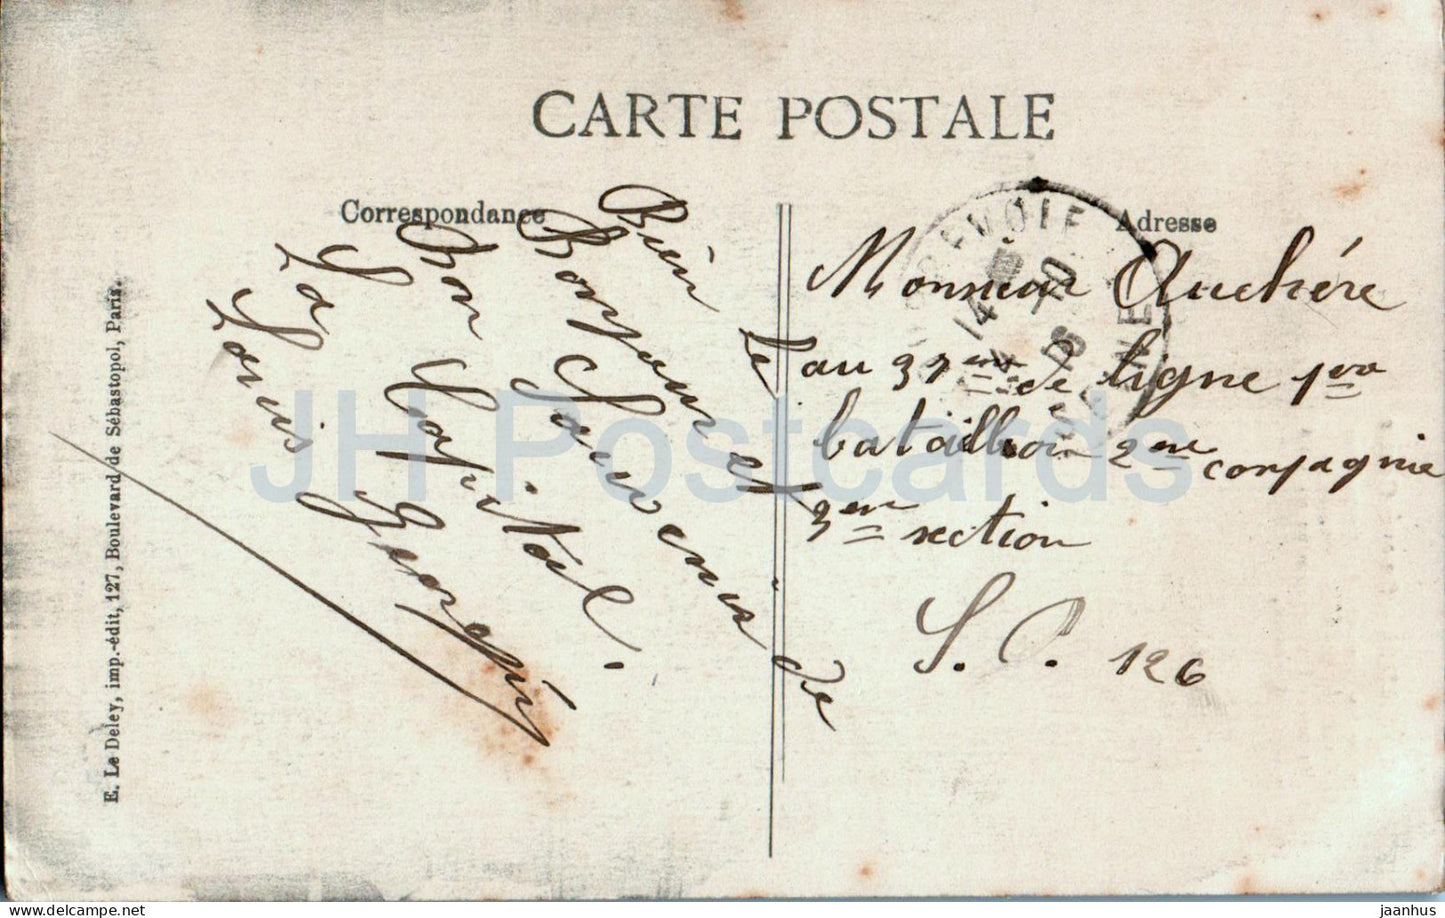 Paris - Sacré Coeur - Basilique - cathédrale - 4032 - carte postale ancienne - France - occasion 